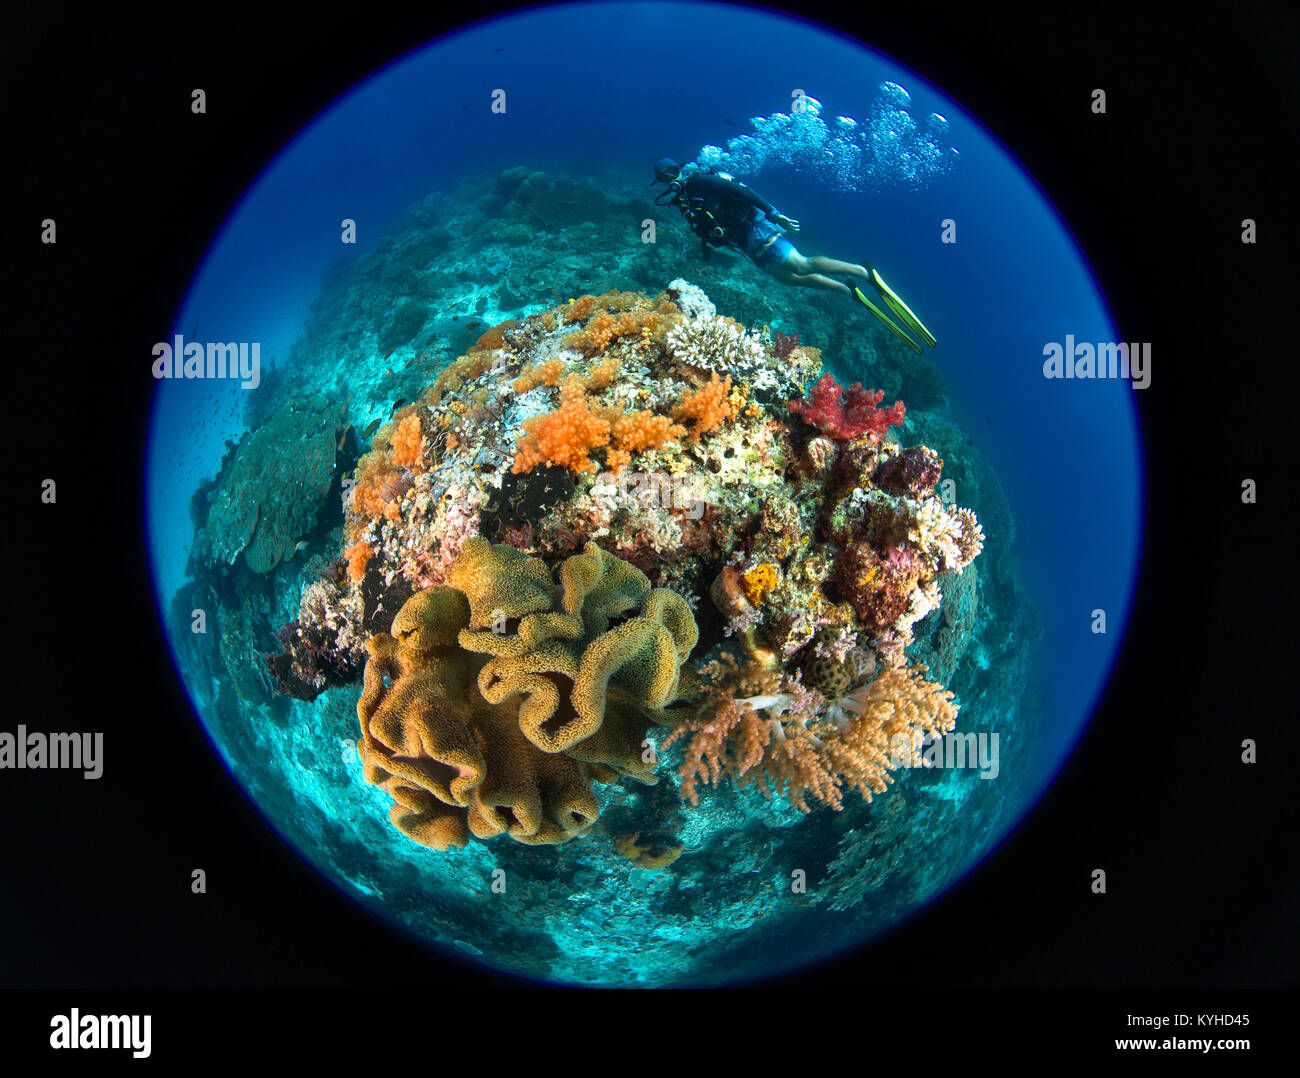 A Circular Fisheye Foto eines Scuba Diver swimming um ein Korallenriff bommie mit Schwämmen und Weichkorallen in Raja Ampat Inseln, Indonesien. Stockfoto